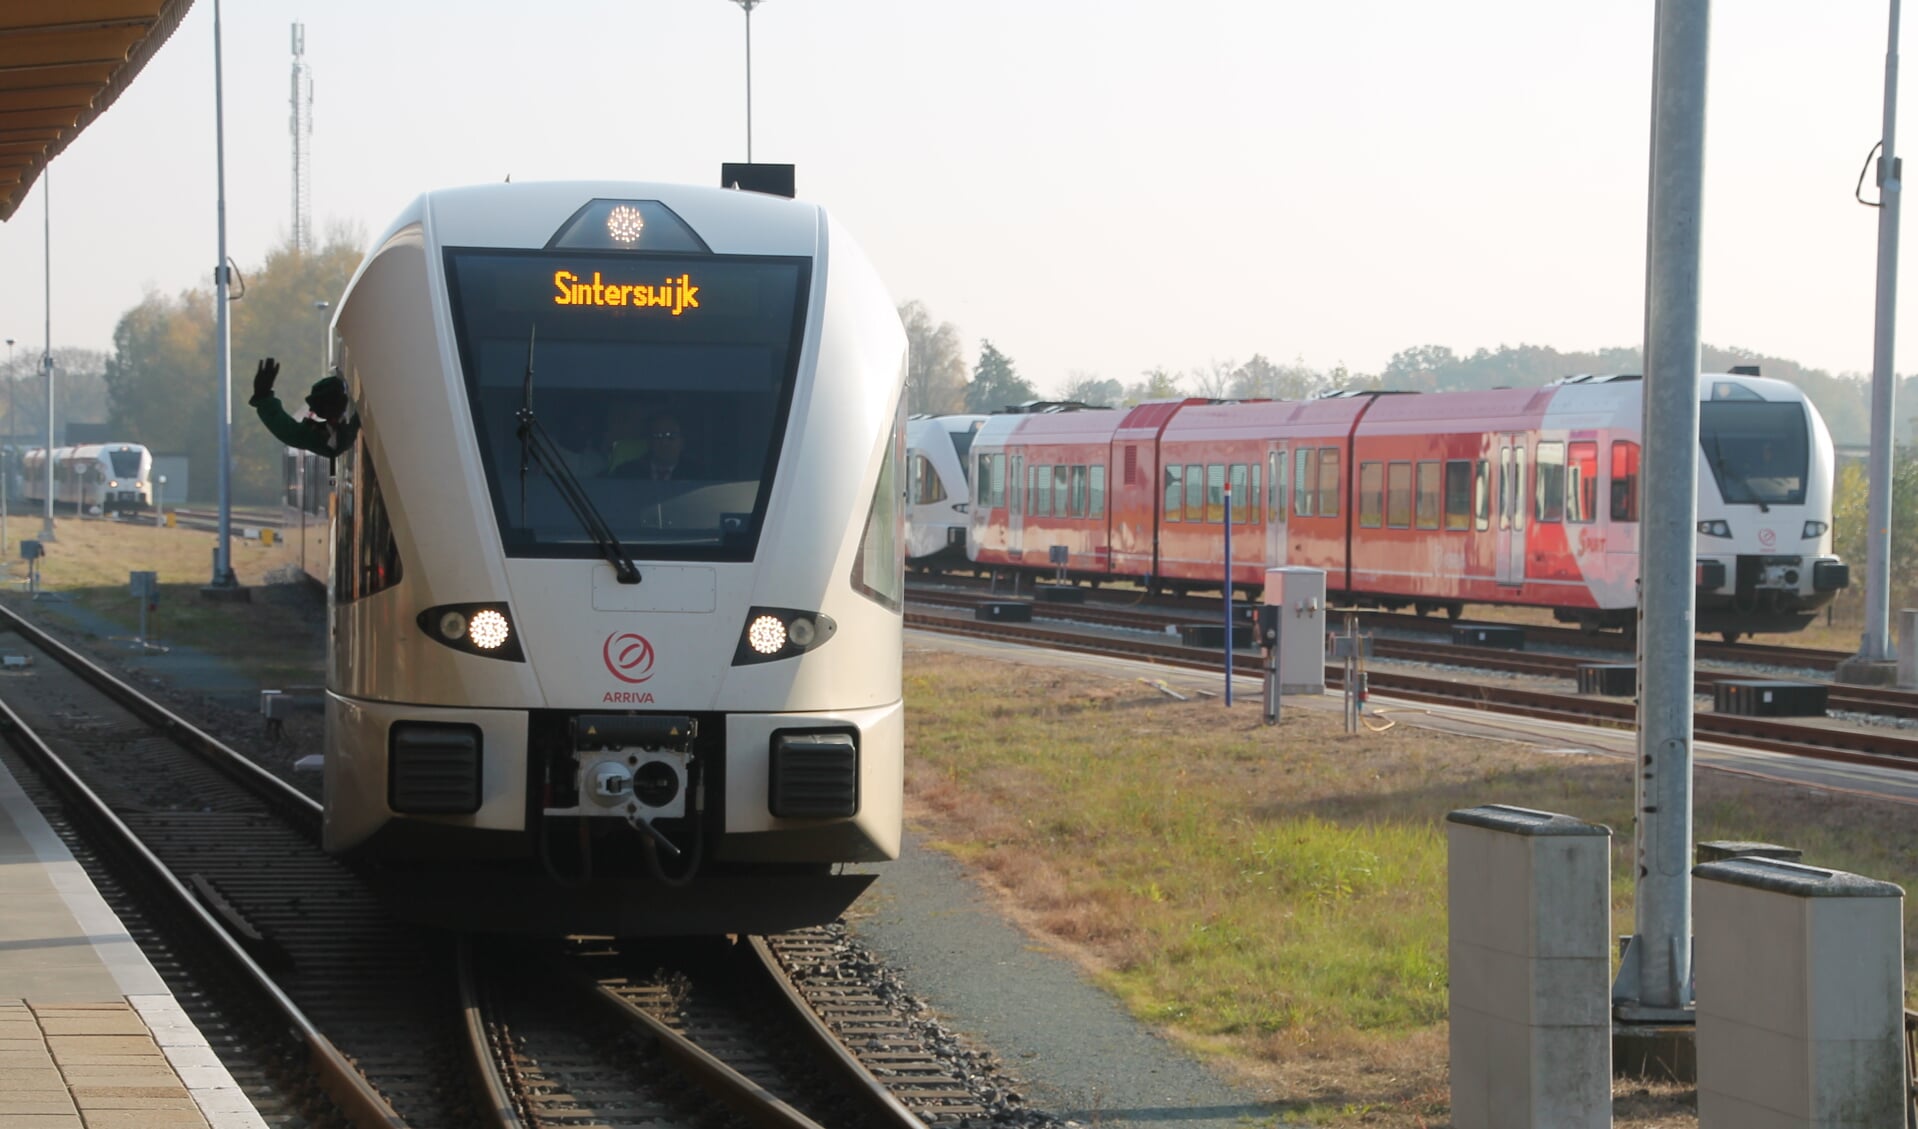 De trein met bestemming Sinterswijk arriveert op het station in Winterswijk. Foto: LtW